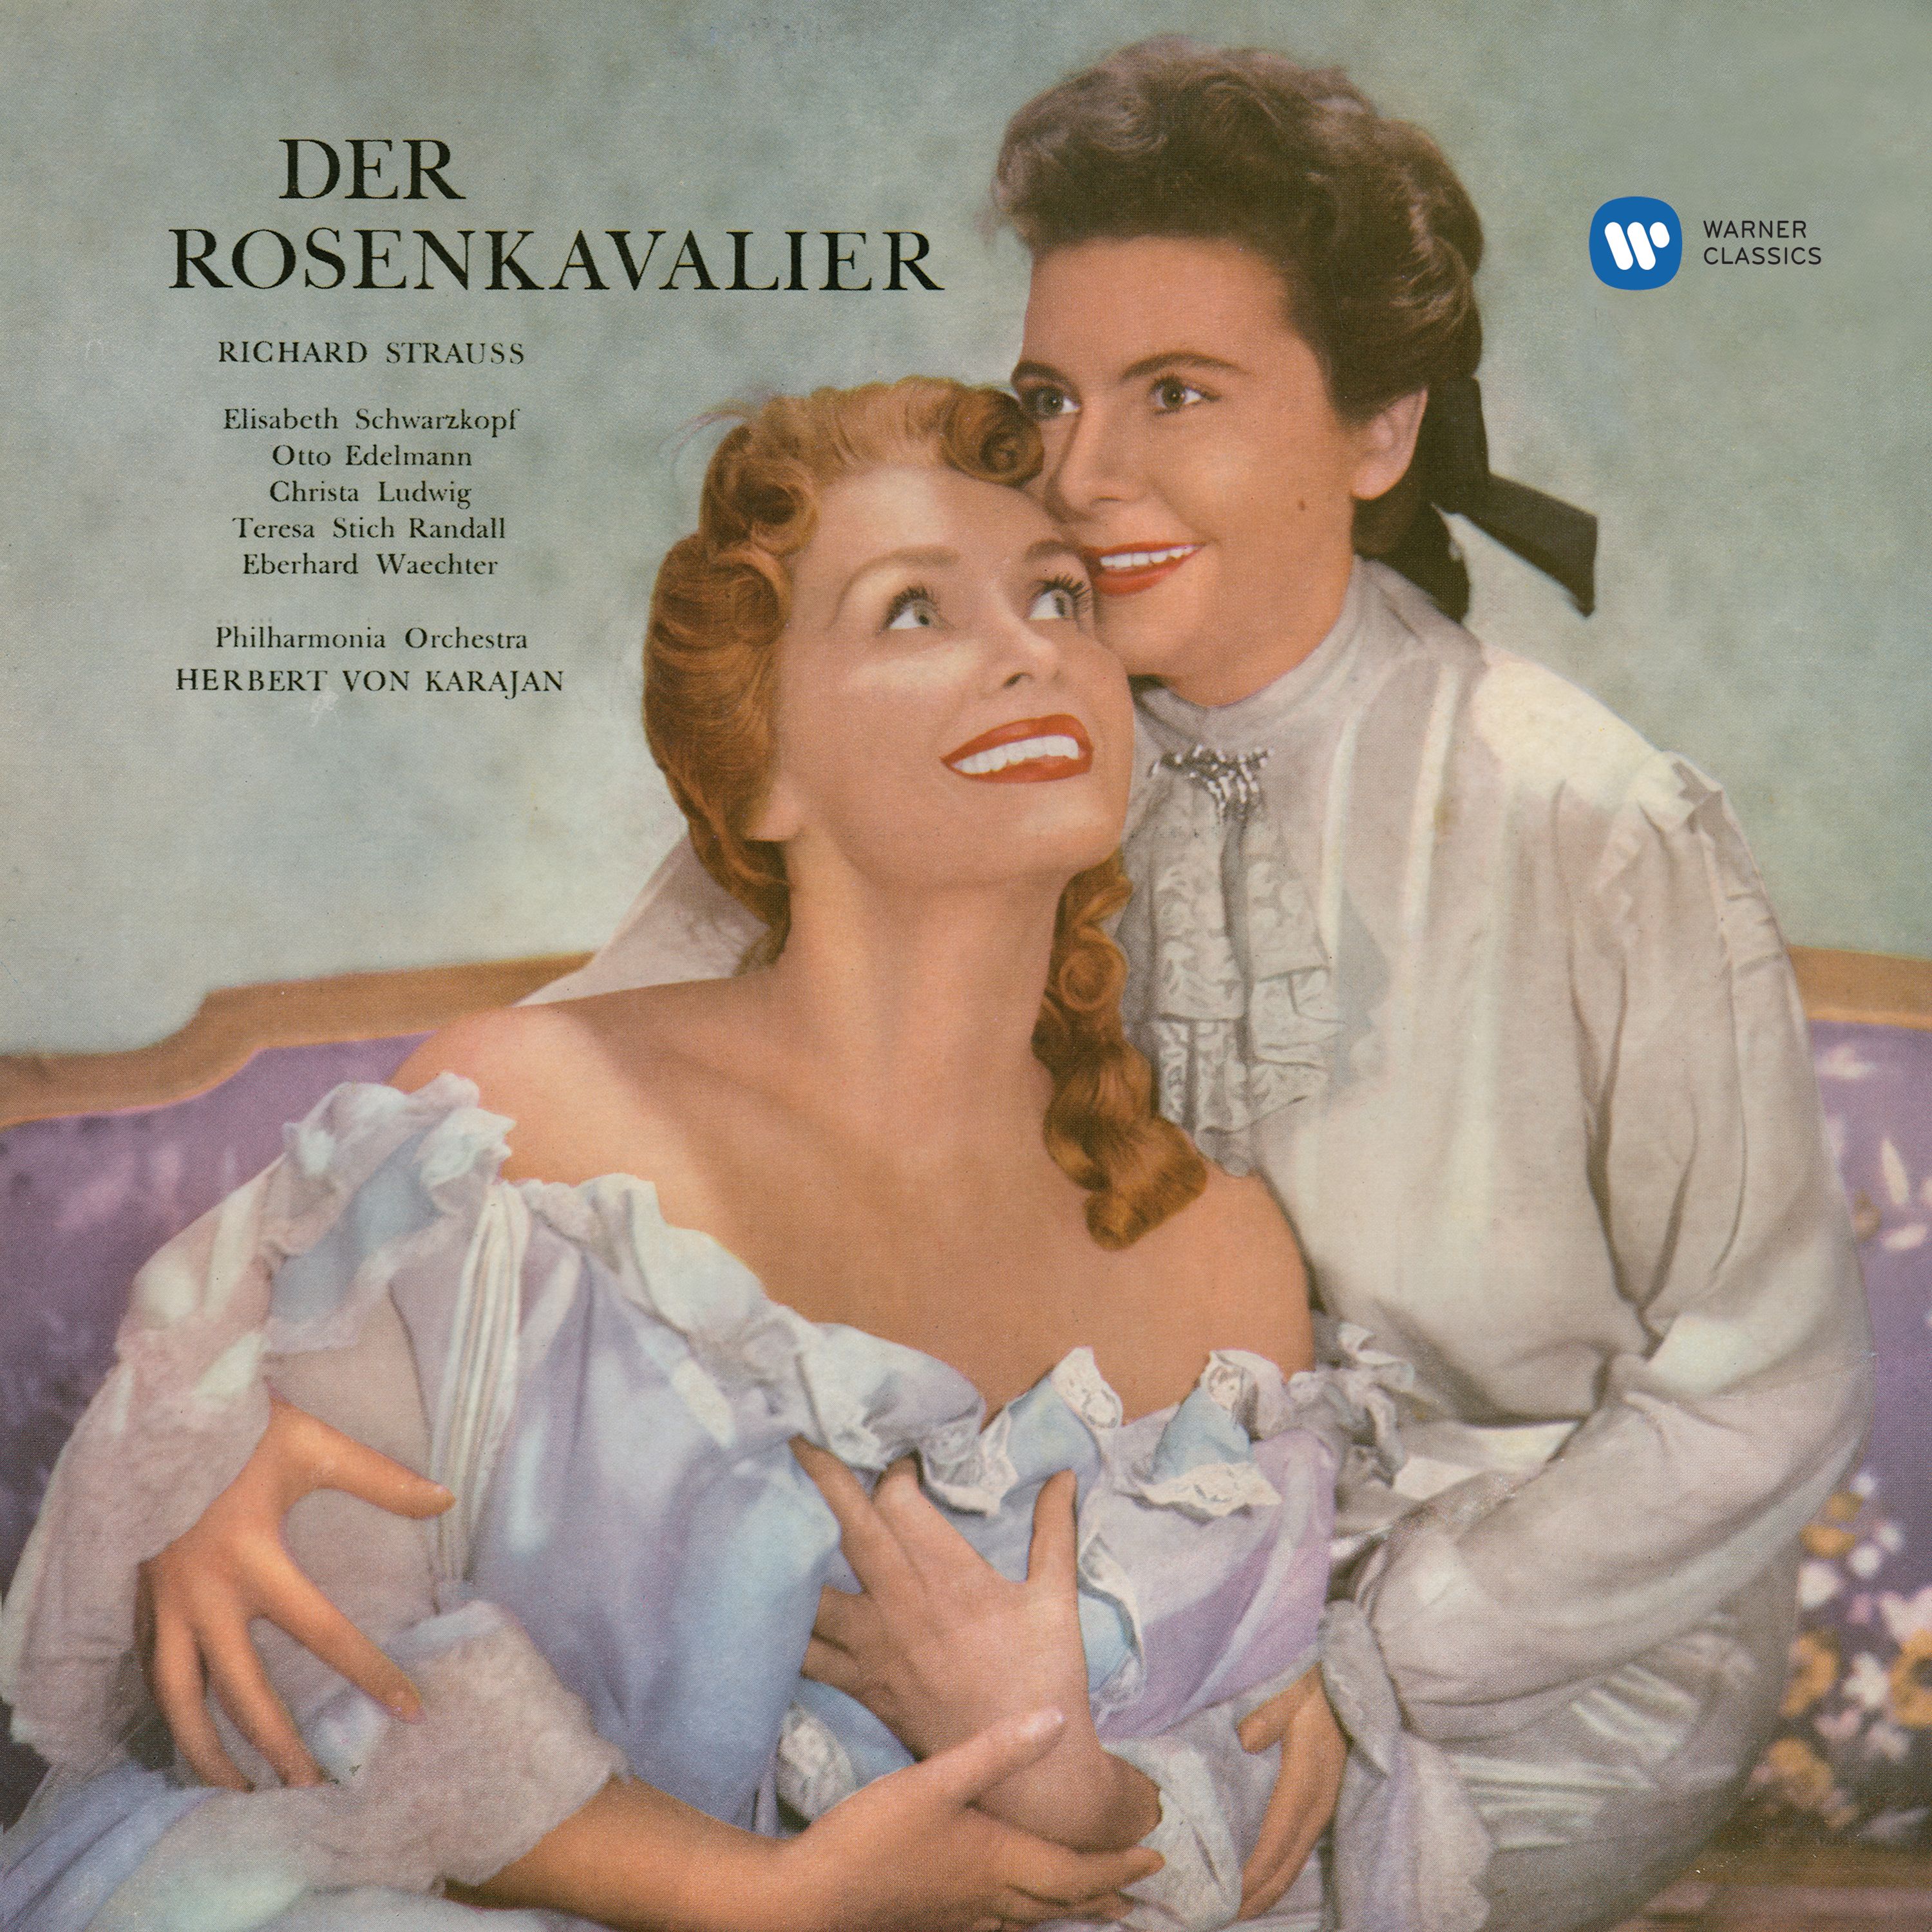 Der Rosenkavalier, Op. 59, Act 3: "Sind halt also, die jungen Leut'!" (Faninal, Marschallin)